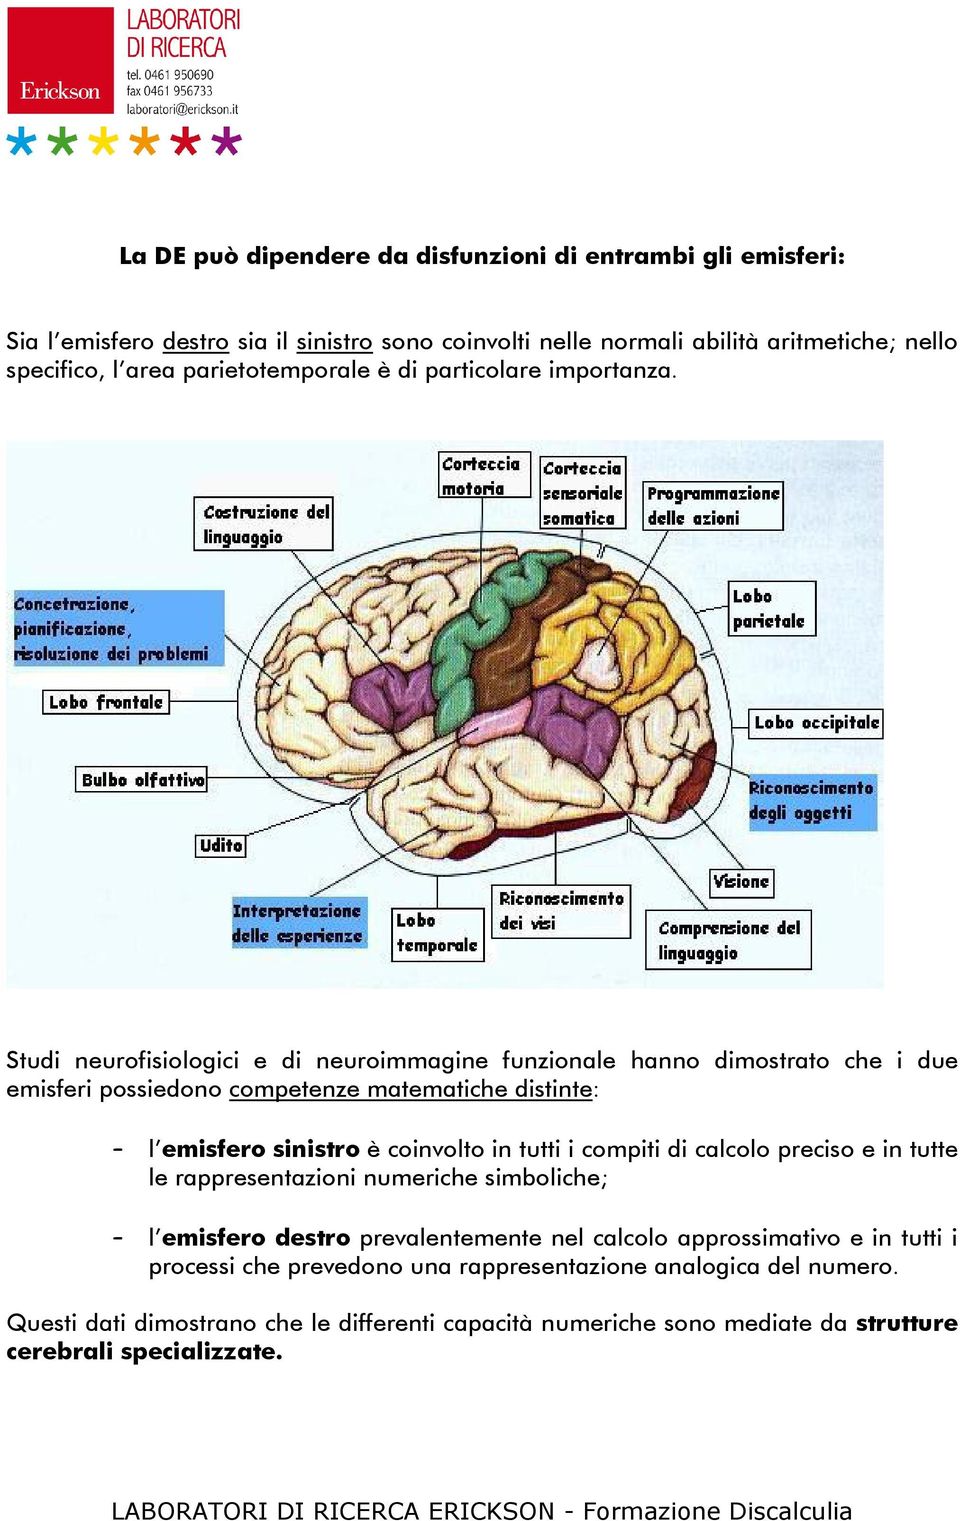 Studi neurofisiologici e di neuroimmagine funzionale hanno dimostrato che i due emisferi possiedono competenze matematiche distinte: l emisfero sinistro è coinvolto in tutti i